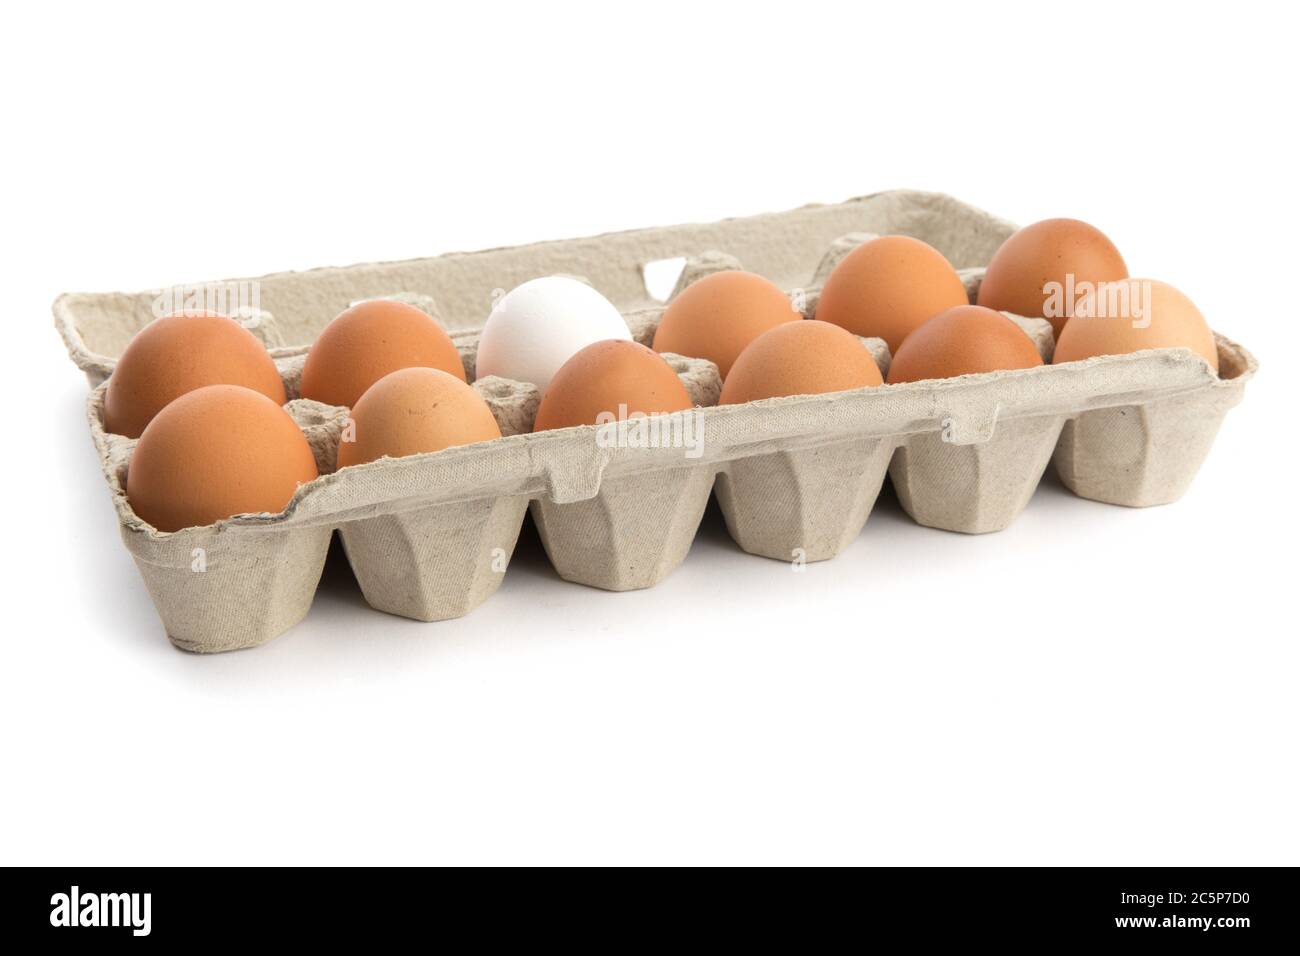 Ein Dutzend Eier Elf Braun Eines Weiss In Einem Pappkarton Auf Weiss Isoliert Stockfotografie Alamy